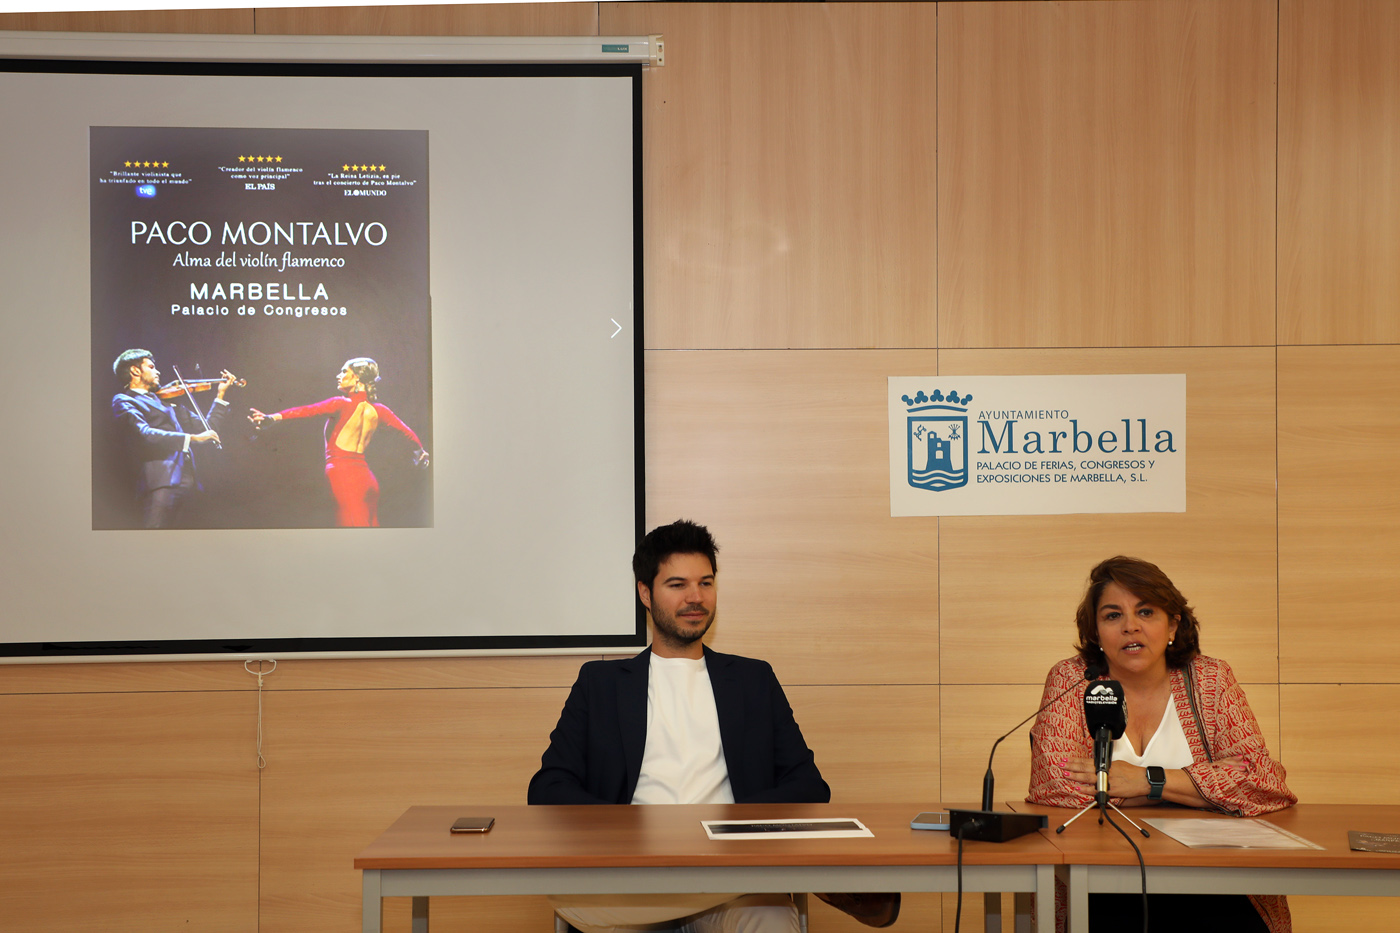 El Palacio de Congresos Adolfo Suárez albergará el 6 de agosto el espectáculo ‘Alma del violín flamenco’, del artista Paco Montalvo, que regresa a Marbella tras el éxito de su innovadora fusión musical